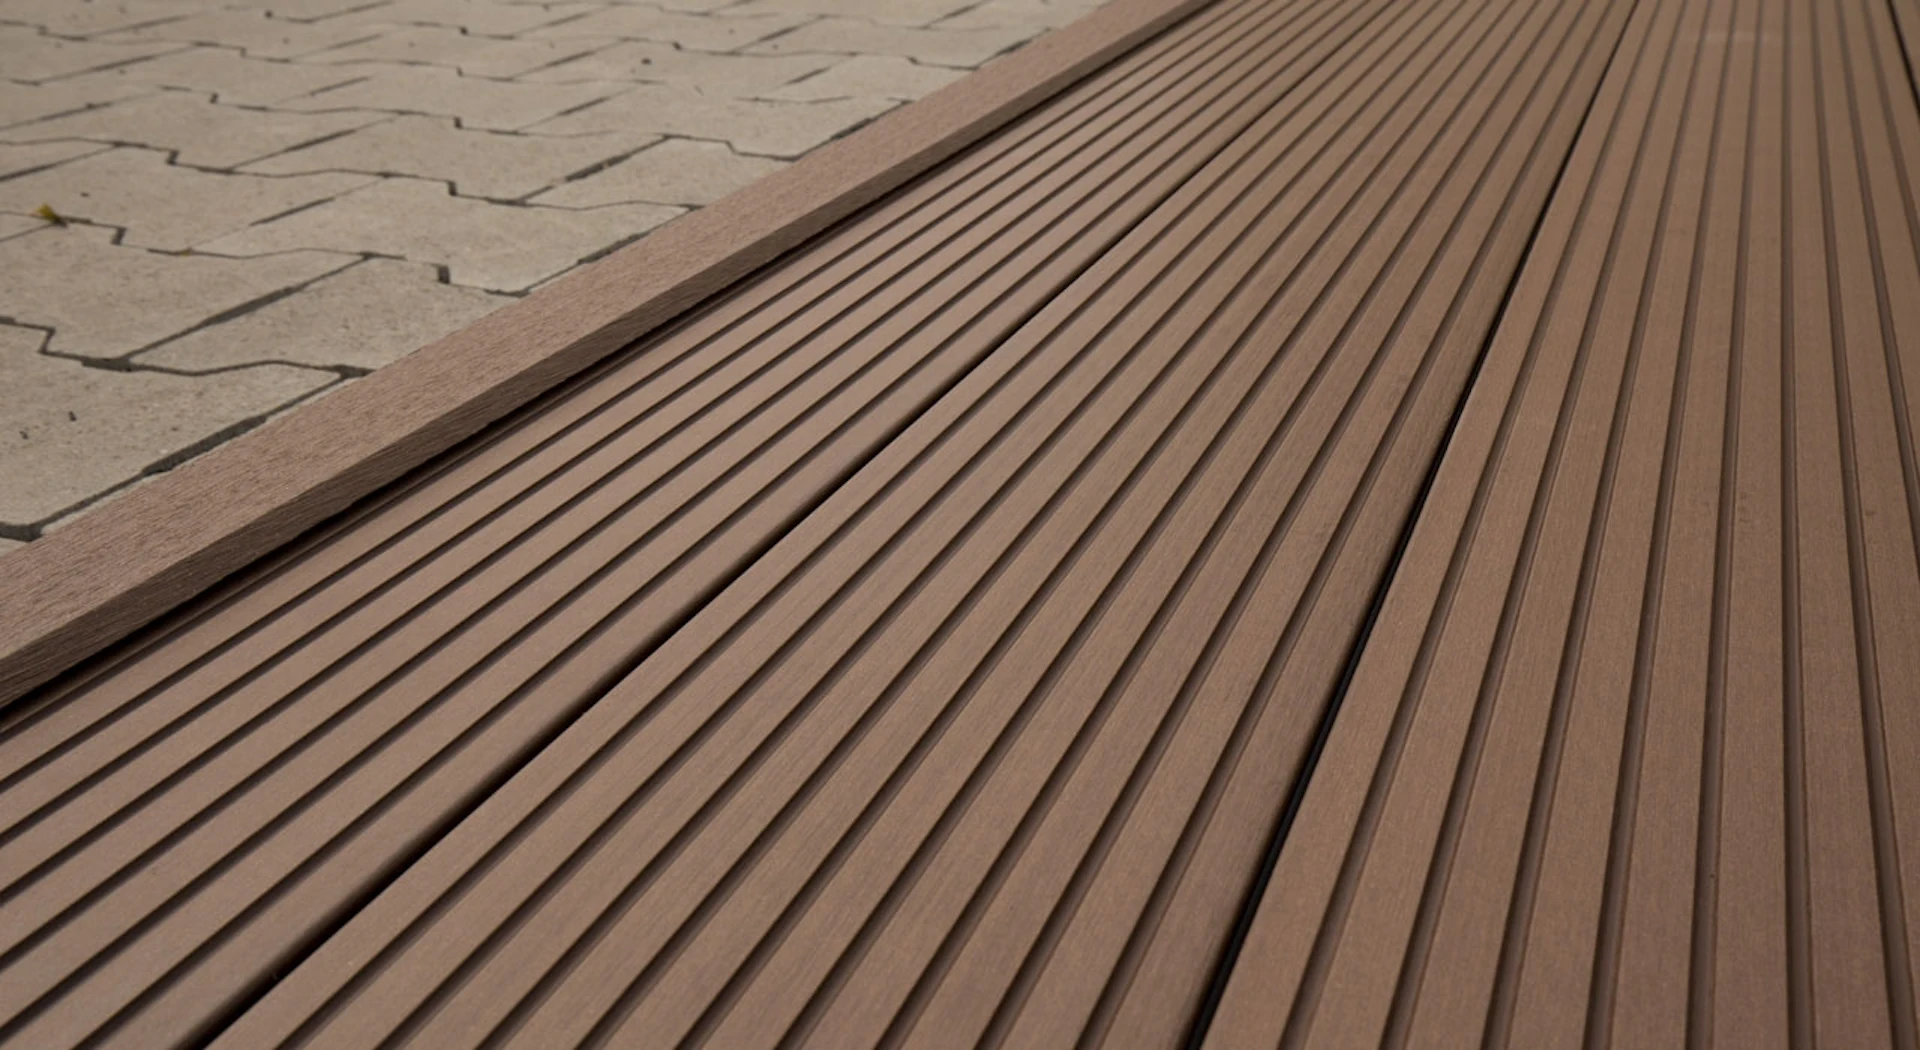 planeo pavimenti WPC striscia angolare marrone scuro per tavole da decking - 2,2m